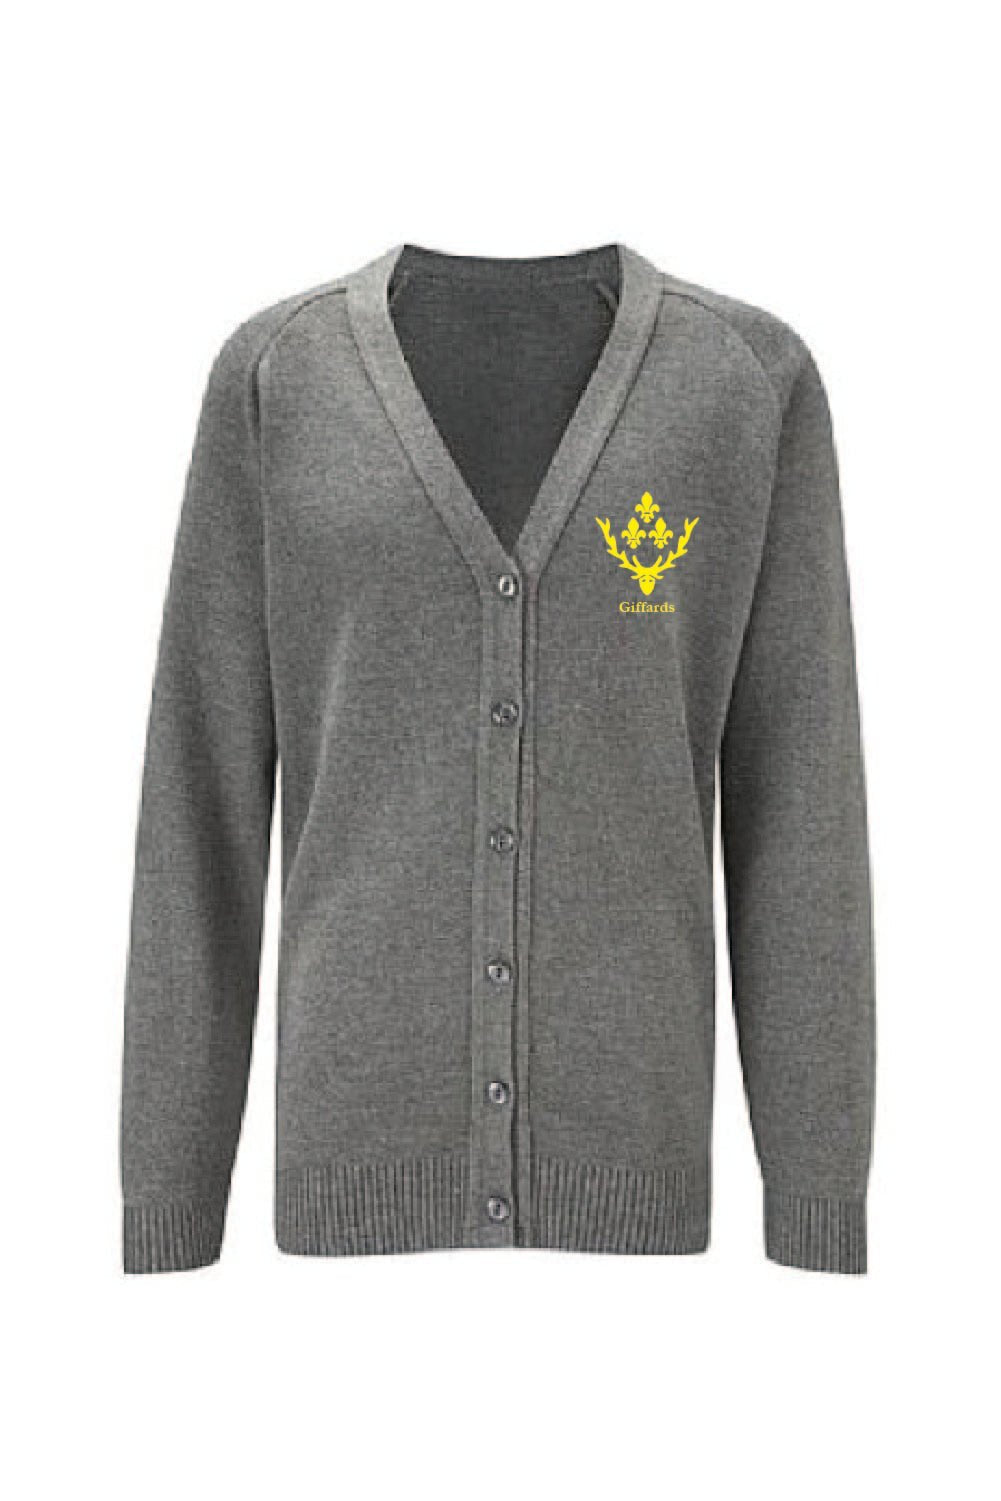 Giffards Primary Knitted Cardigan - Uniformwise Schoolwear